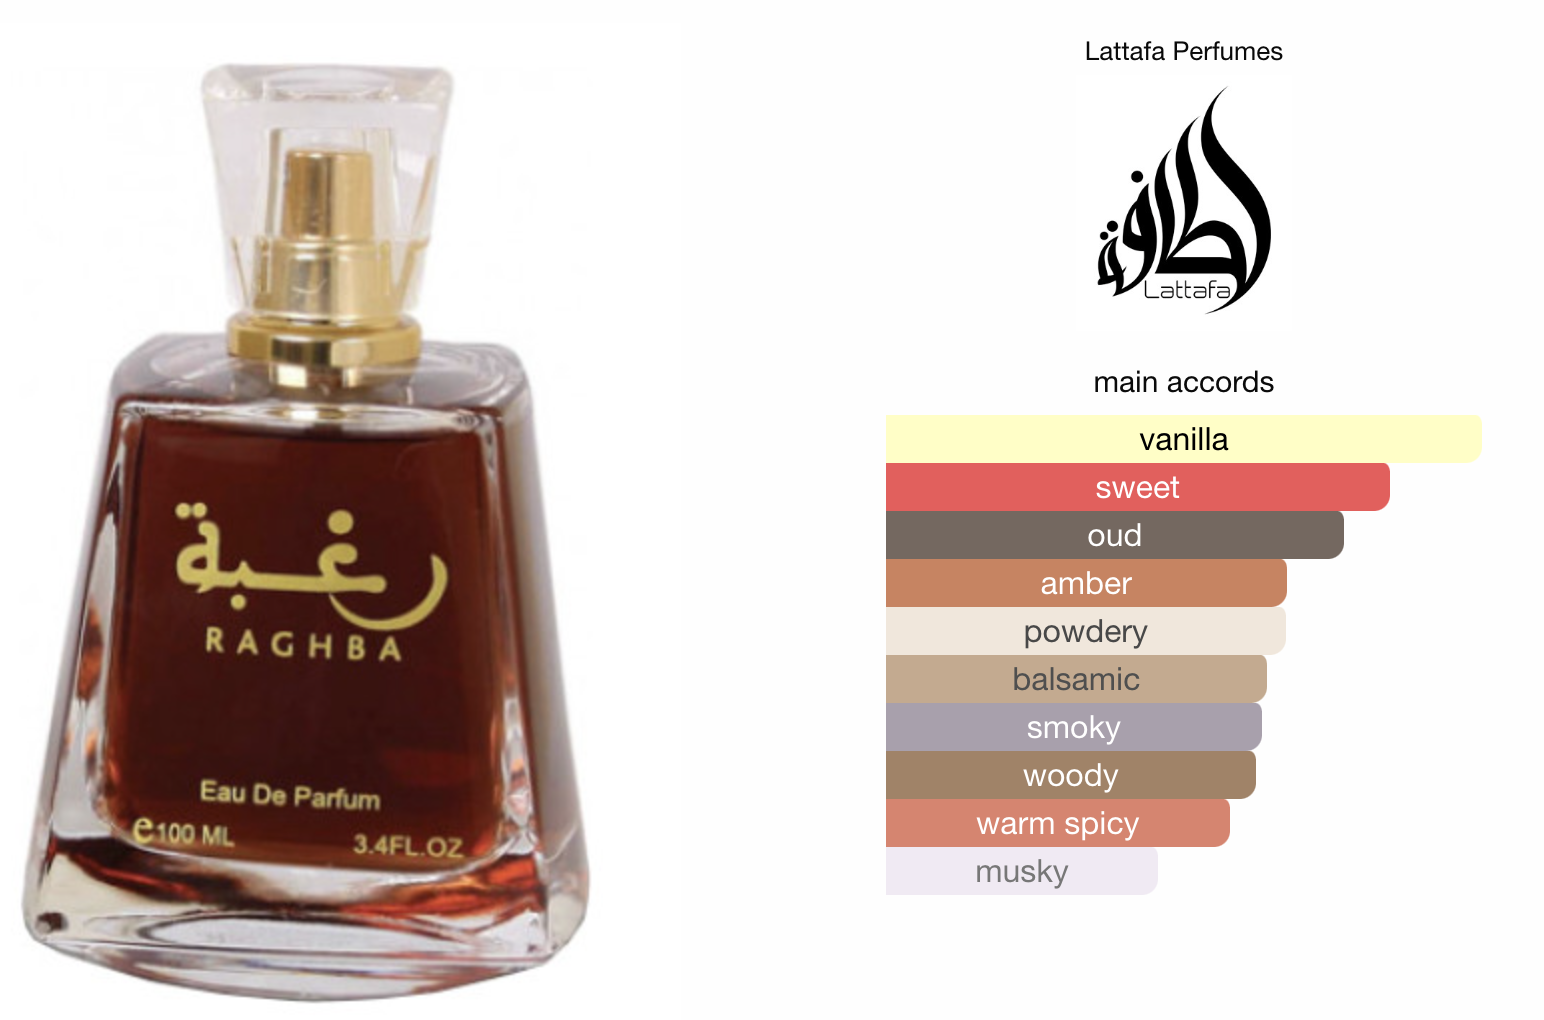 Top oriental perfumes under 50$